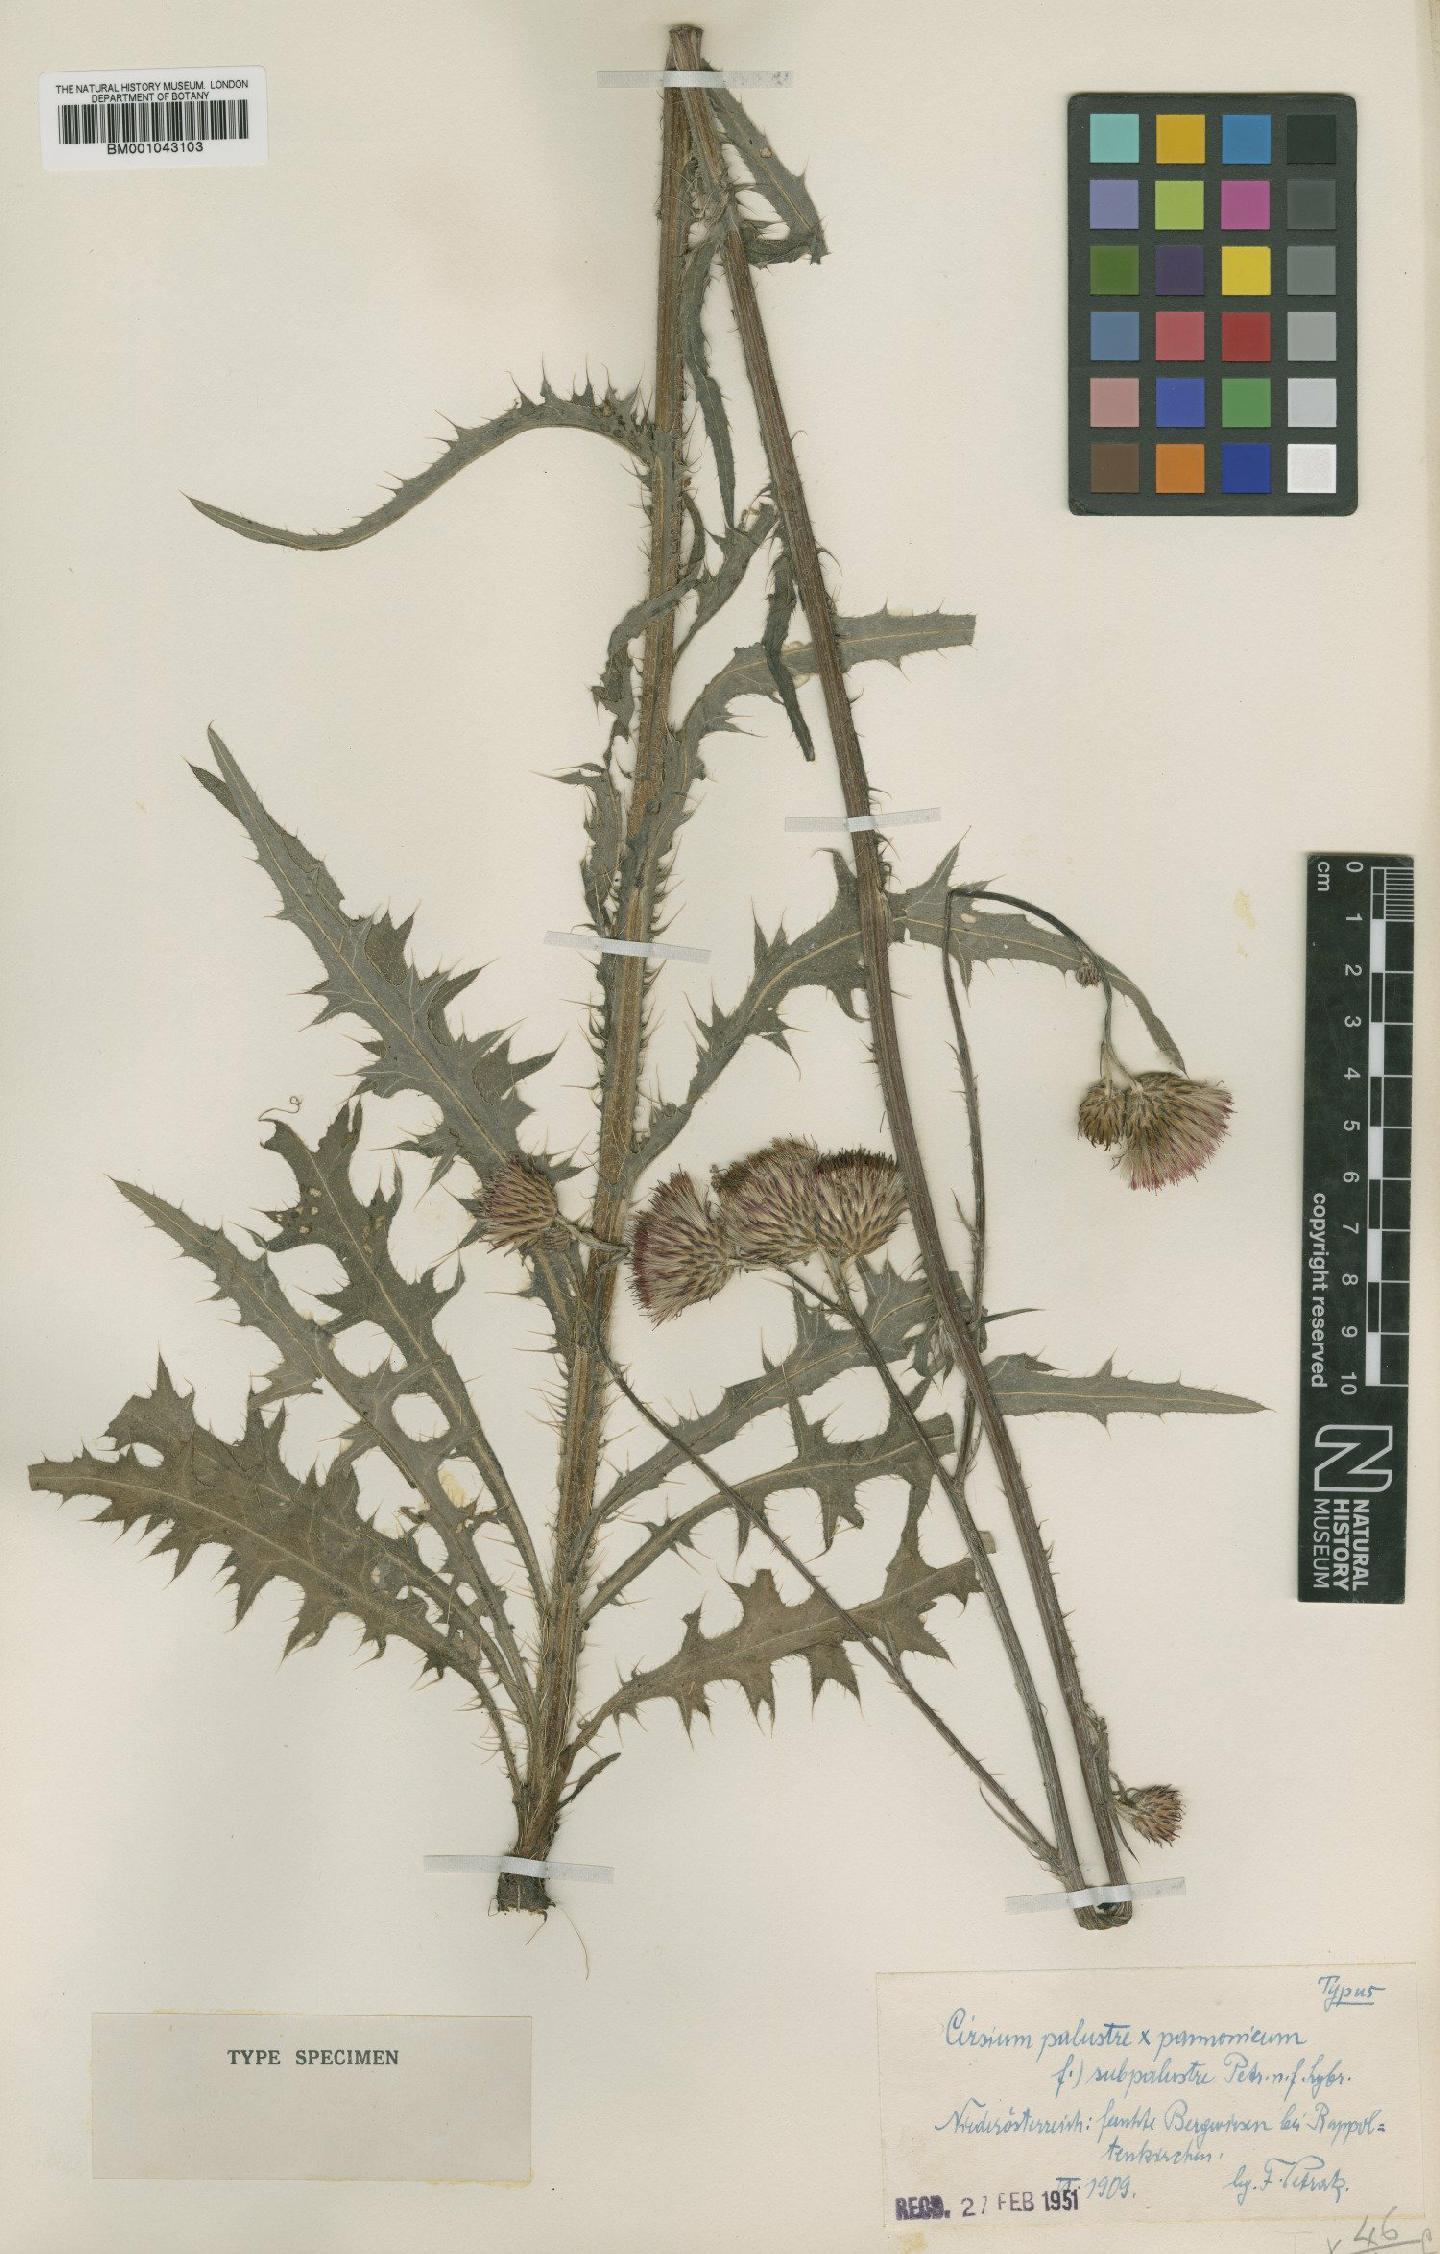 To NHMUK collection (Cirsium palustre (L.) Scop; NHMUK:ecatalogue:1983794)